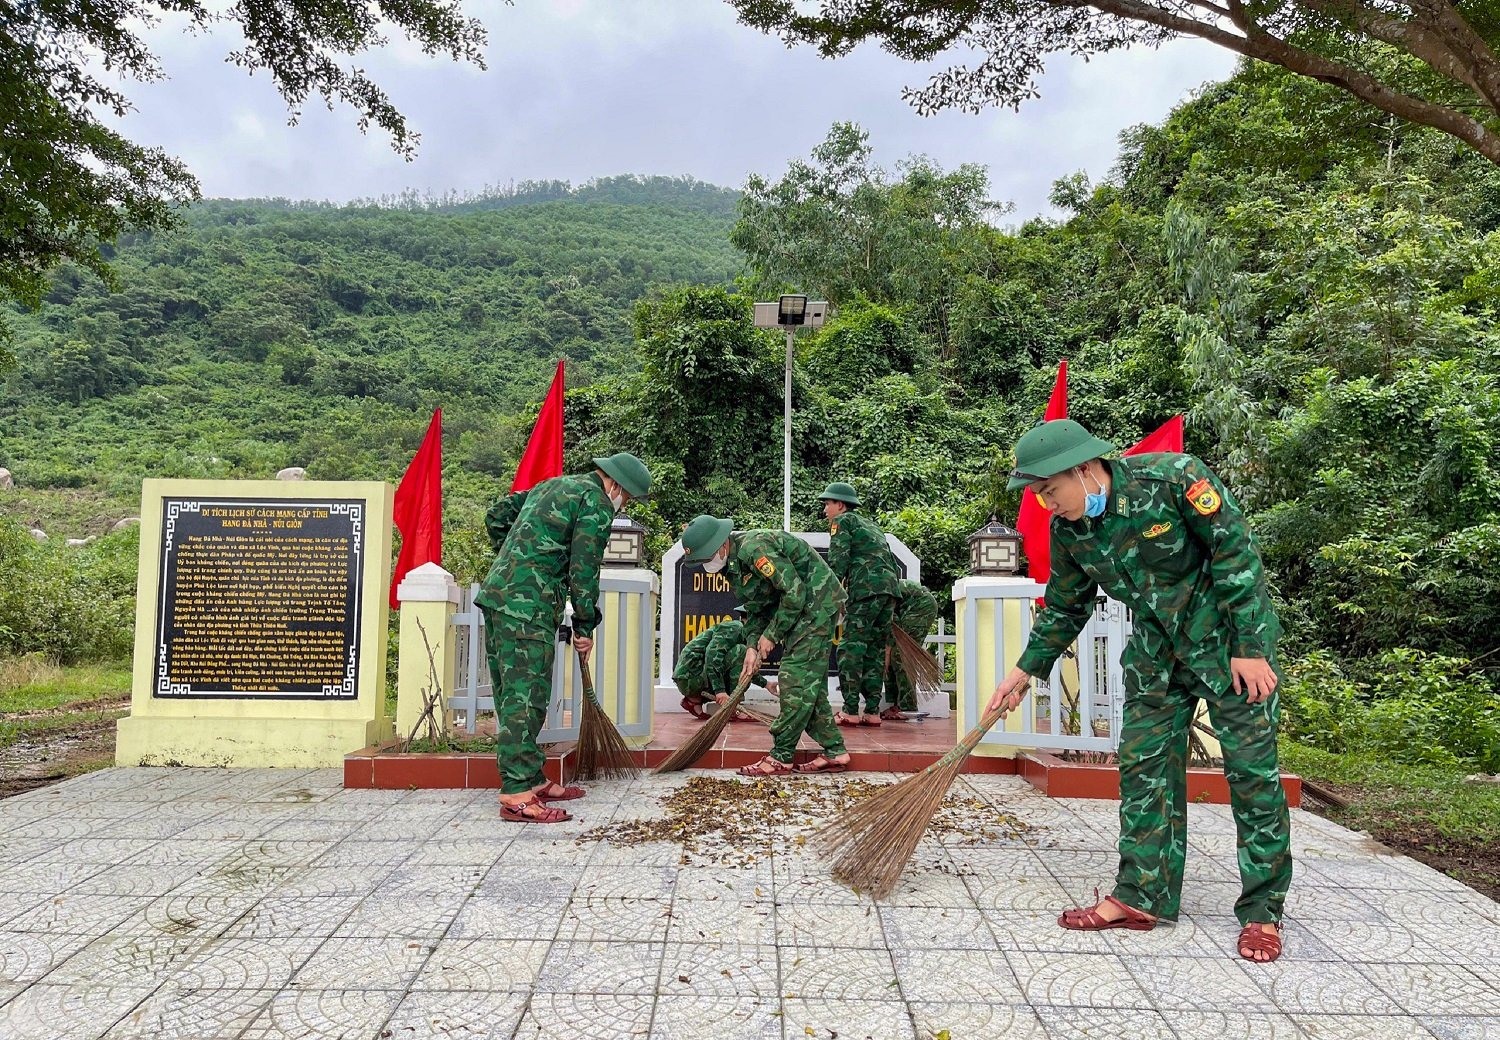 Bộ đội Biên phòng Thừa Thiên Huế được giao quản lý, bảo vệ 80,4km đường biên giới đất liền, tiếp giáp với 2 tỉnh Salavan và Sêkông của nước Cộng hòa Dân chủ Nhân dân Lào, có 2 cửa khẩu A Đớt - Tà Vàng và Hồng Vân - Cu Tài; hơn 120km đường biên giới biển.